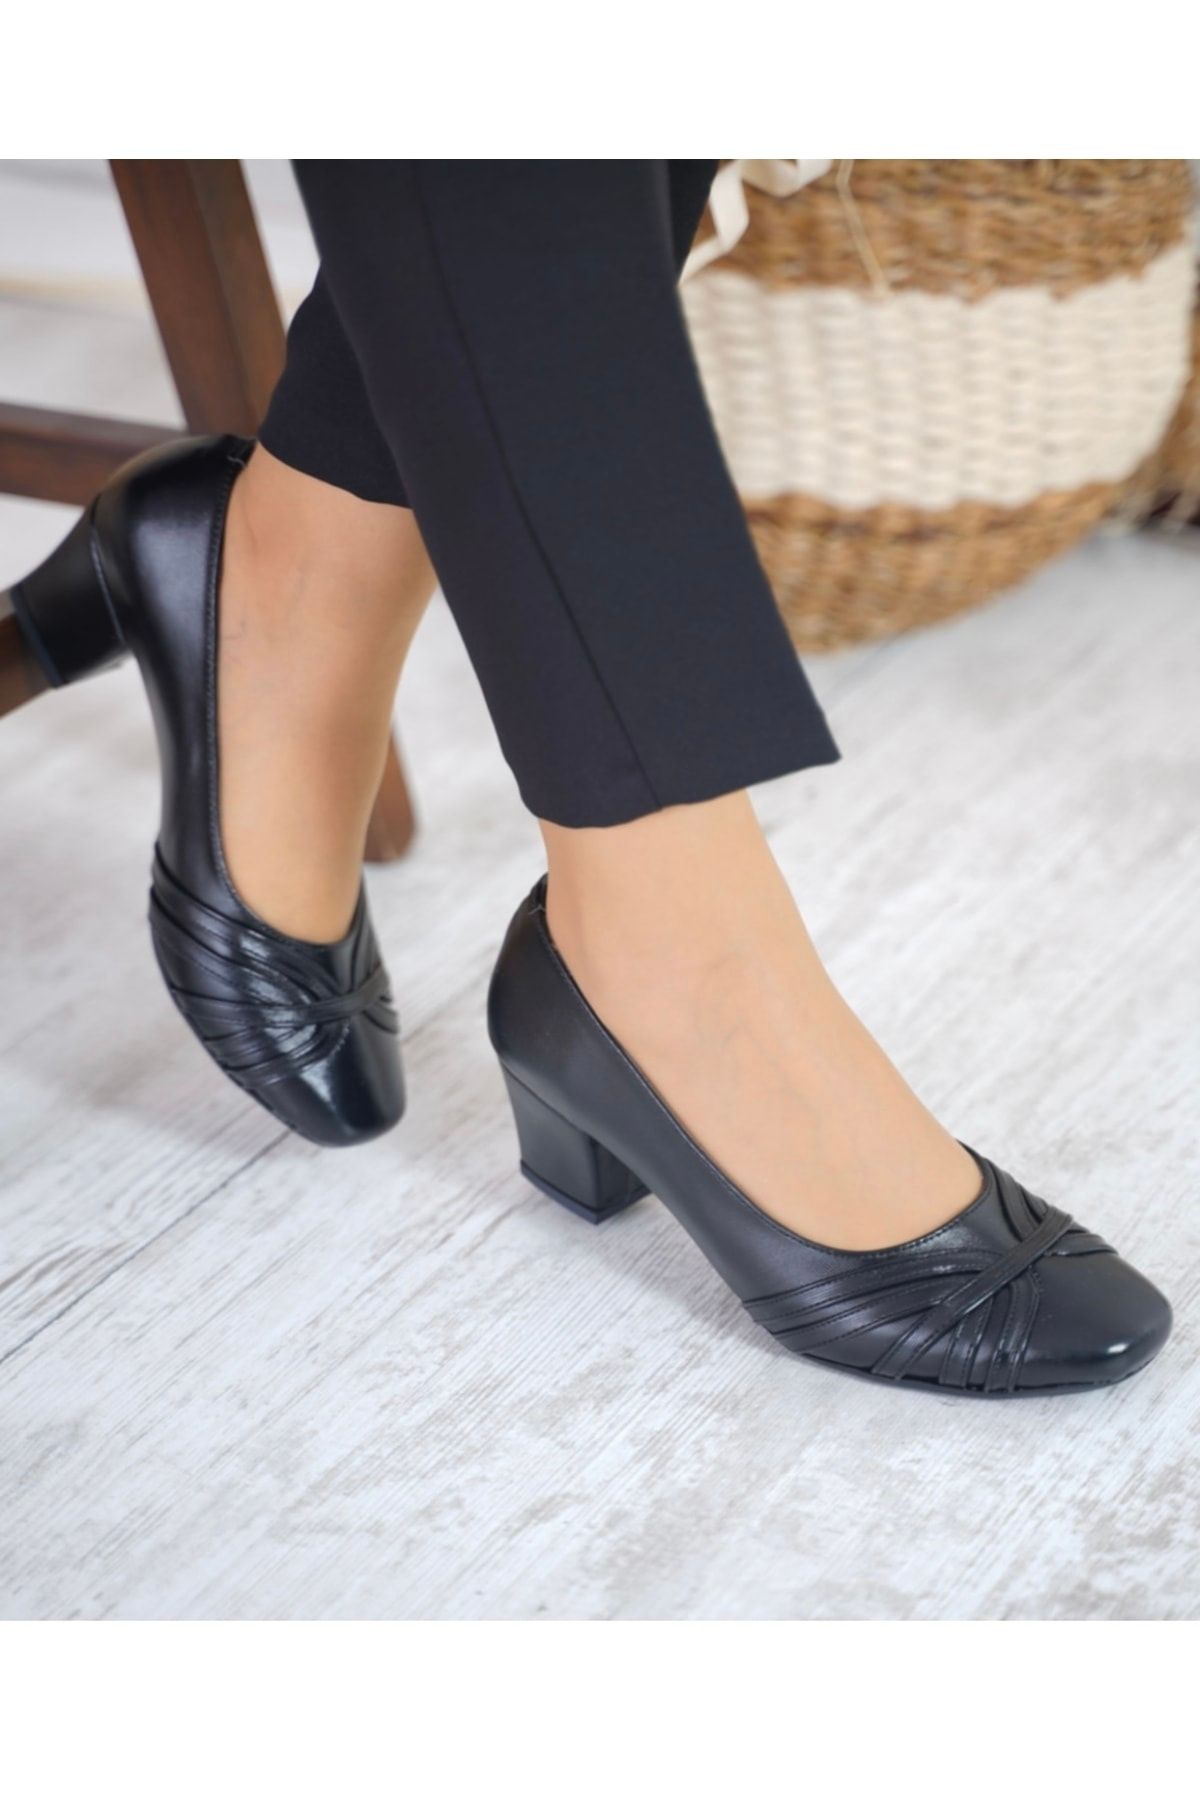 Anıl Ayakkabı Nr 8604 Kadın Siyah Küt Geniş Burun Kalın Topuklu Kadın Ayakkabı 5cm